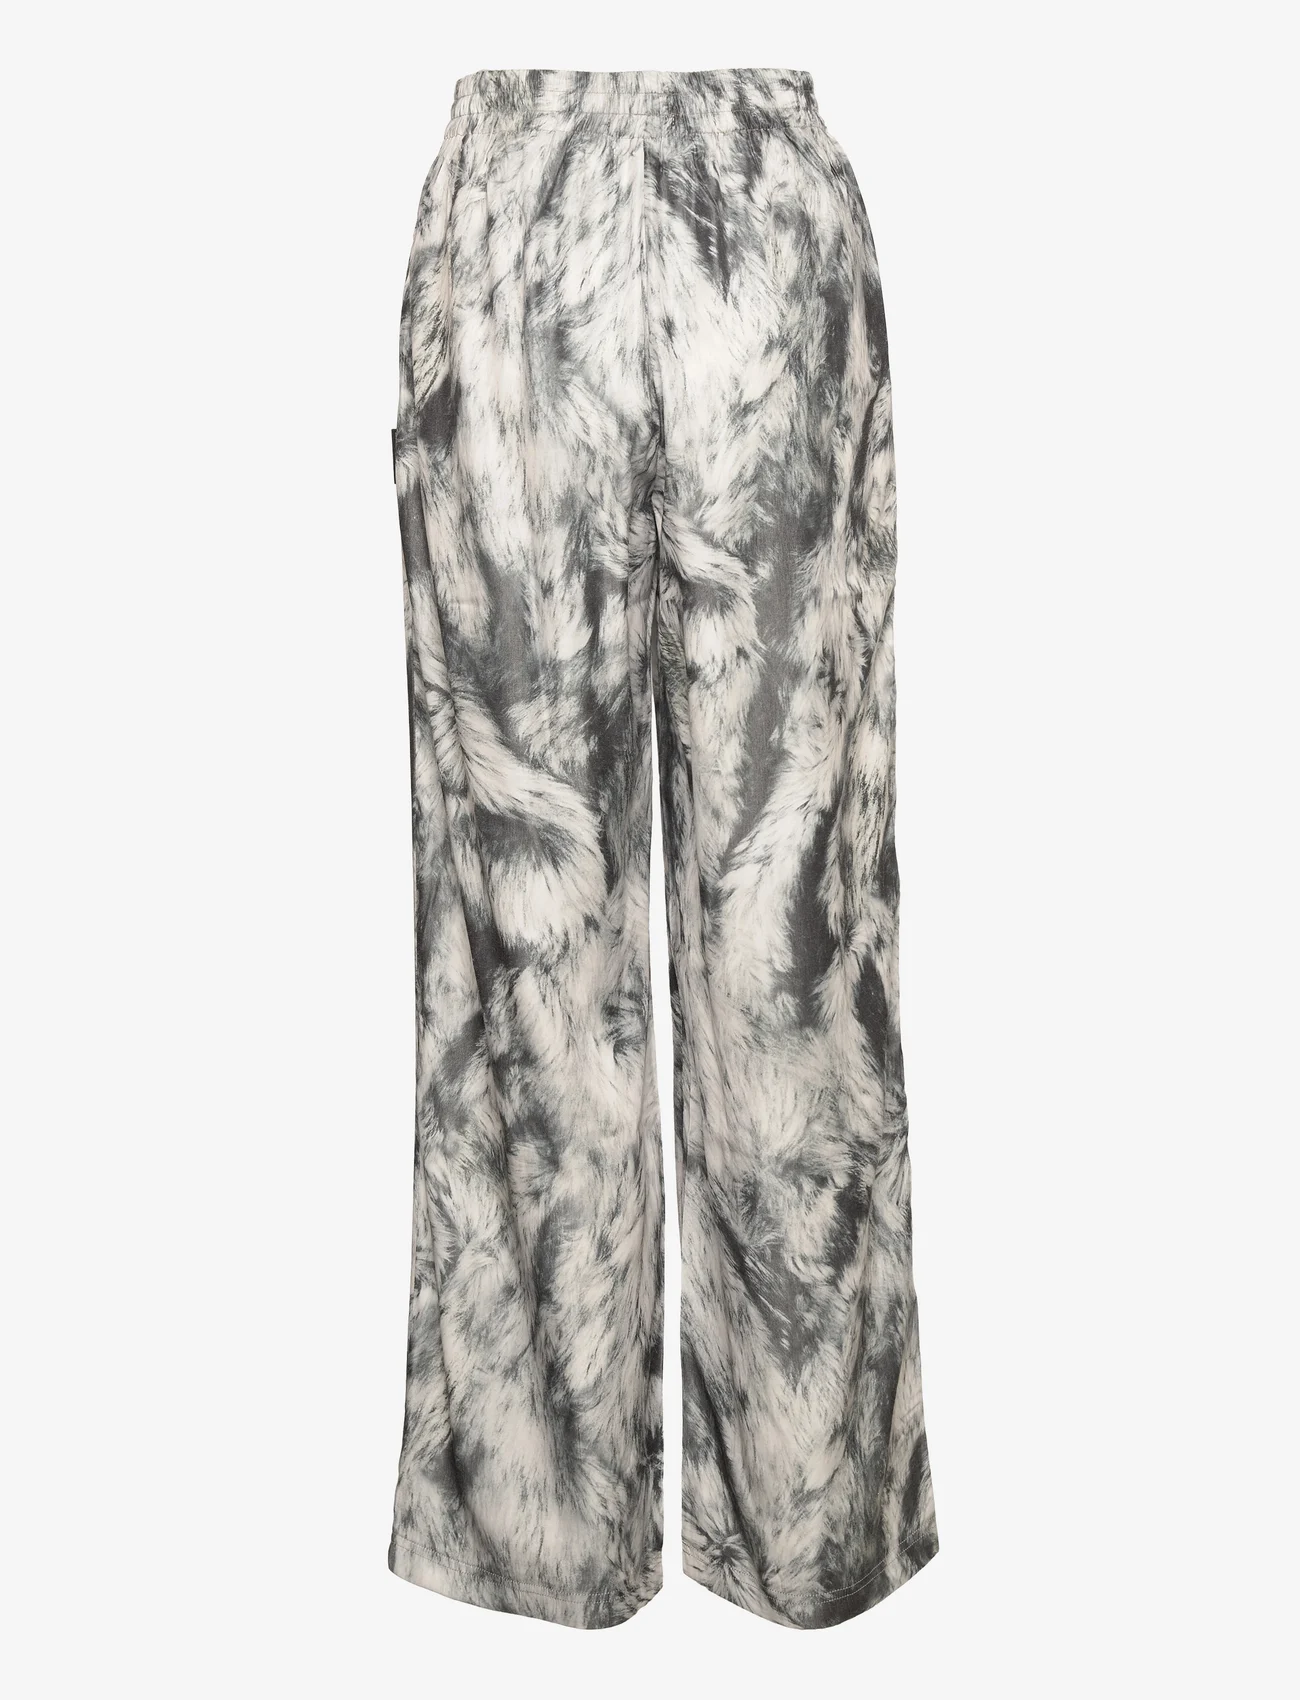 HAN Kjøbenhavn - Drape Pants - black white fur - 1